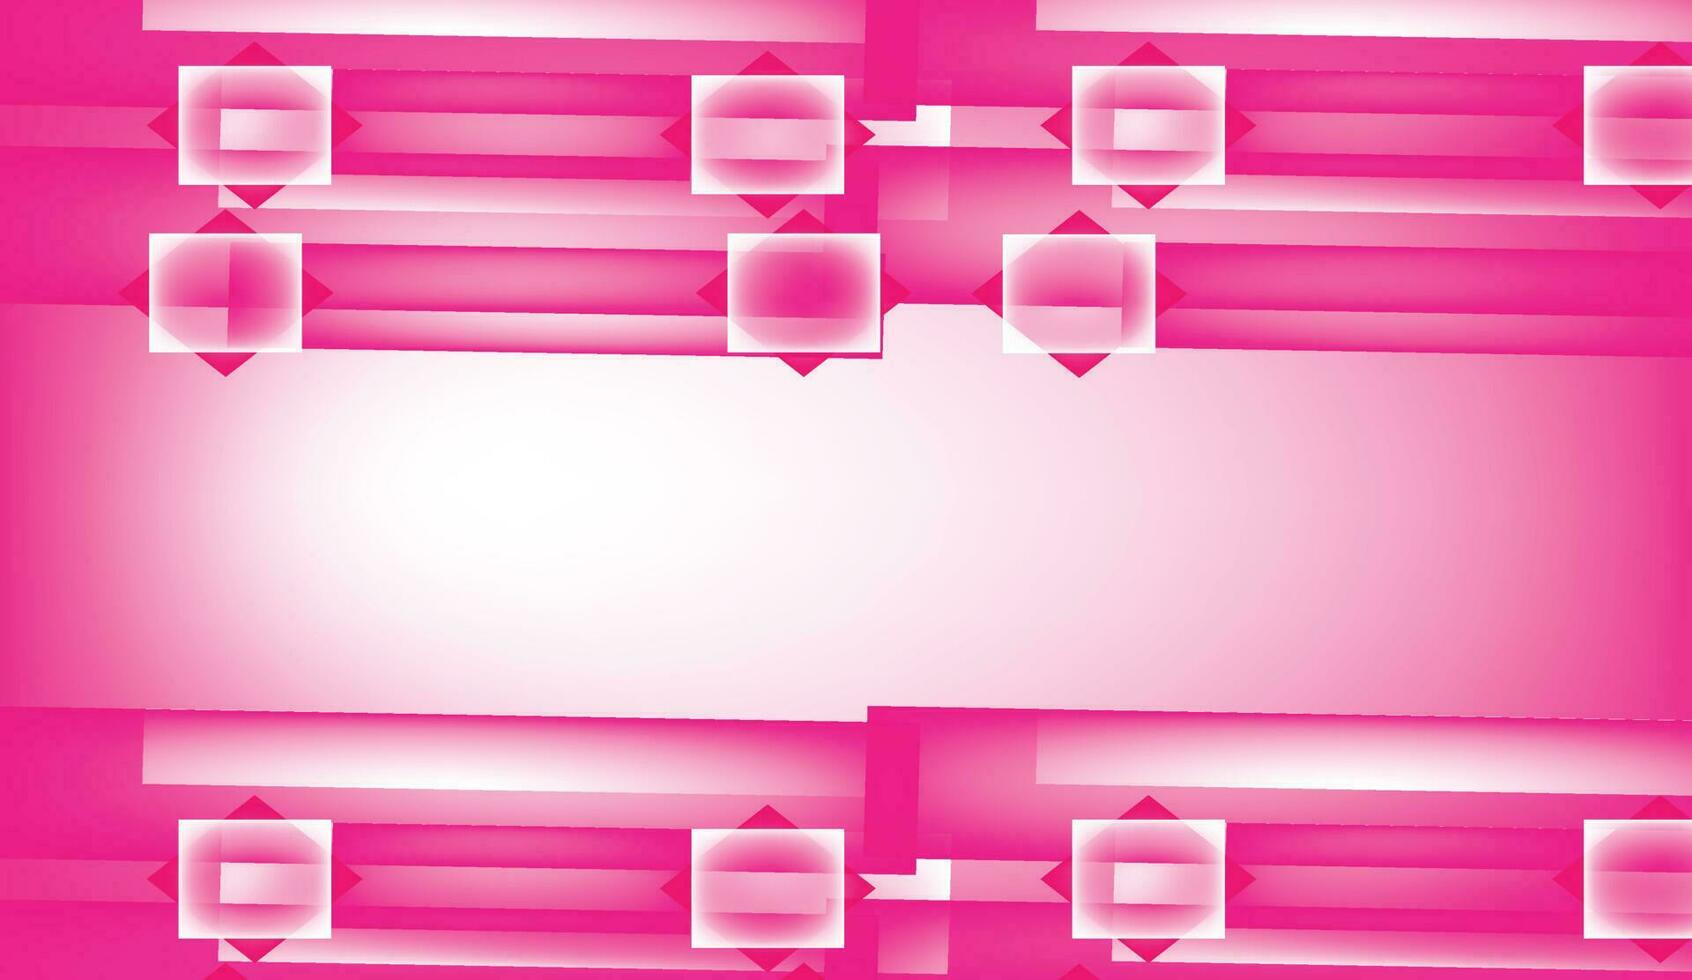 licht roze vector achtergrond met wrang lijnen. helling illustratie in gemakkelijk stijl met bogen